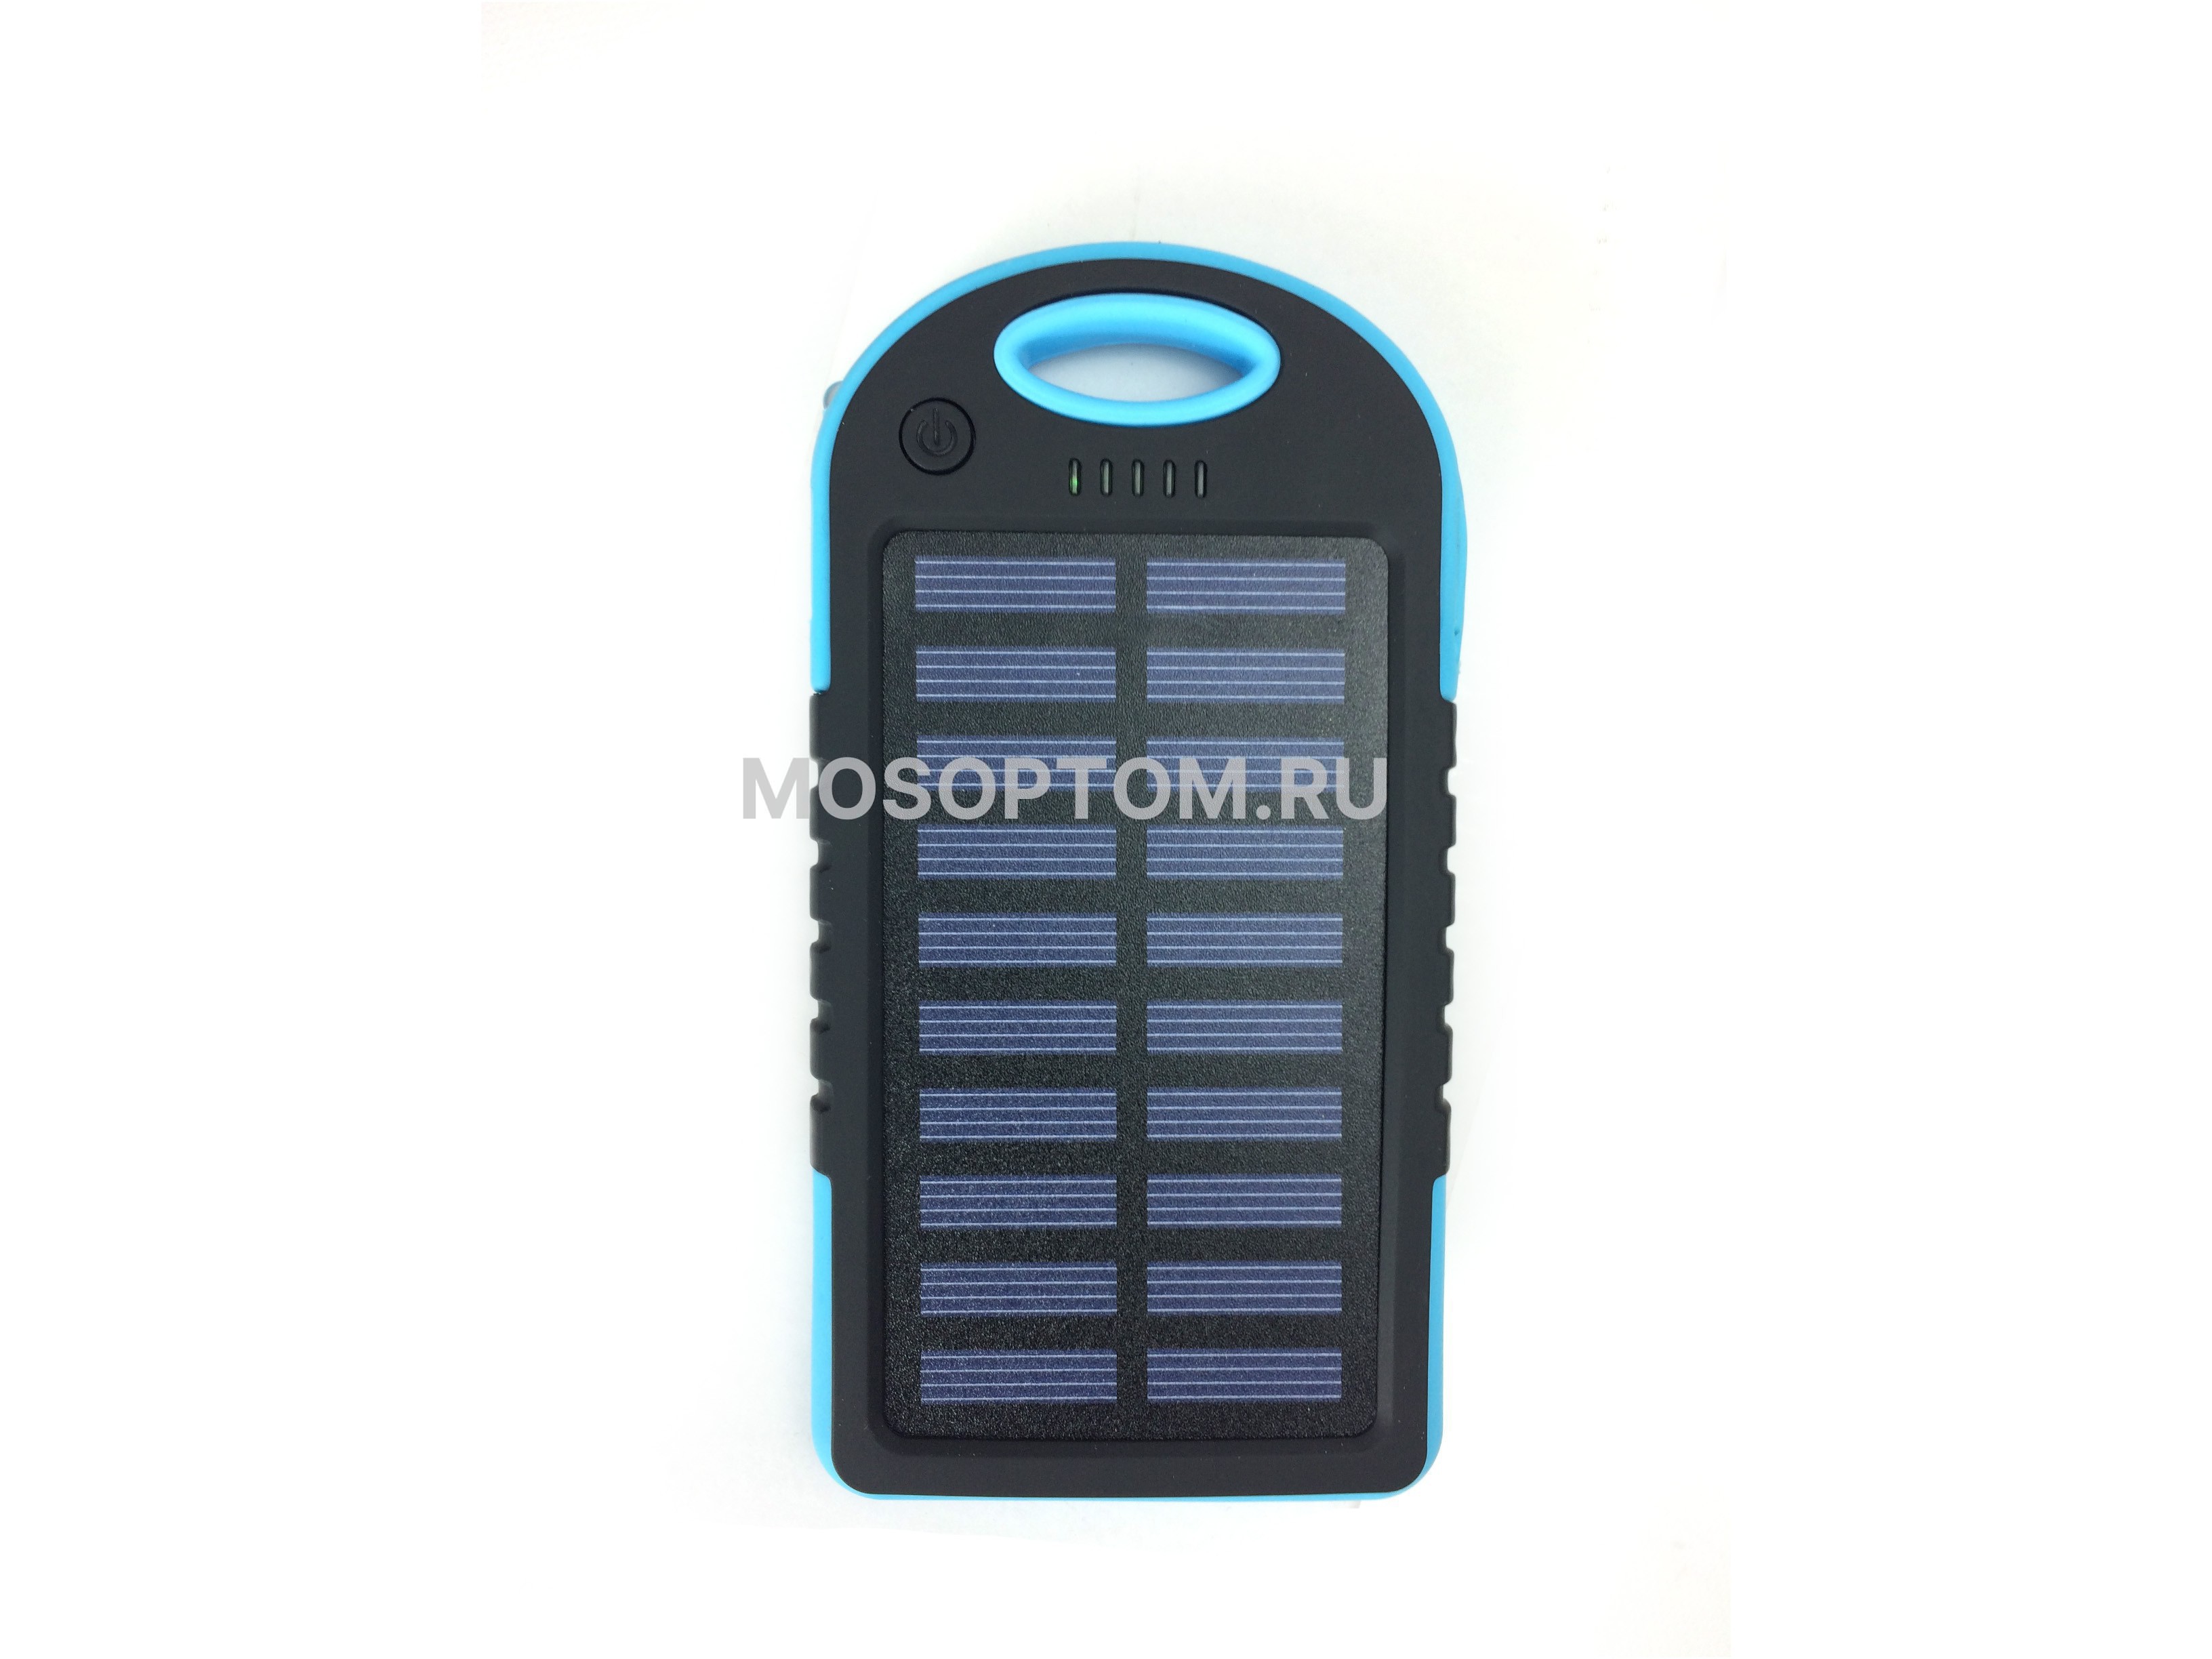 Внешний аккумулятор на солнечной батарее Solar power bank 5000 mAh оптом - Фото №3